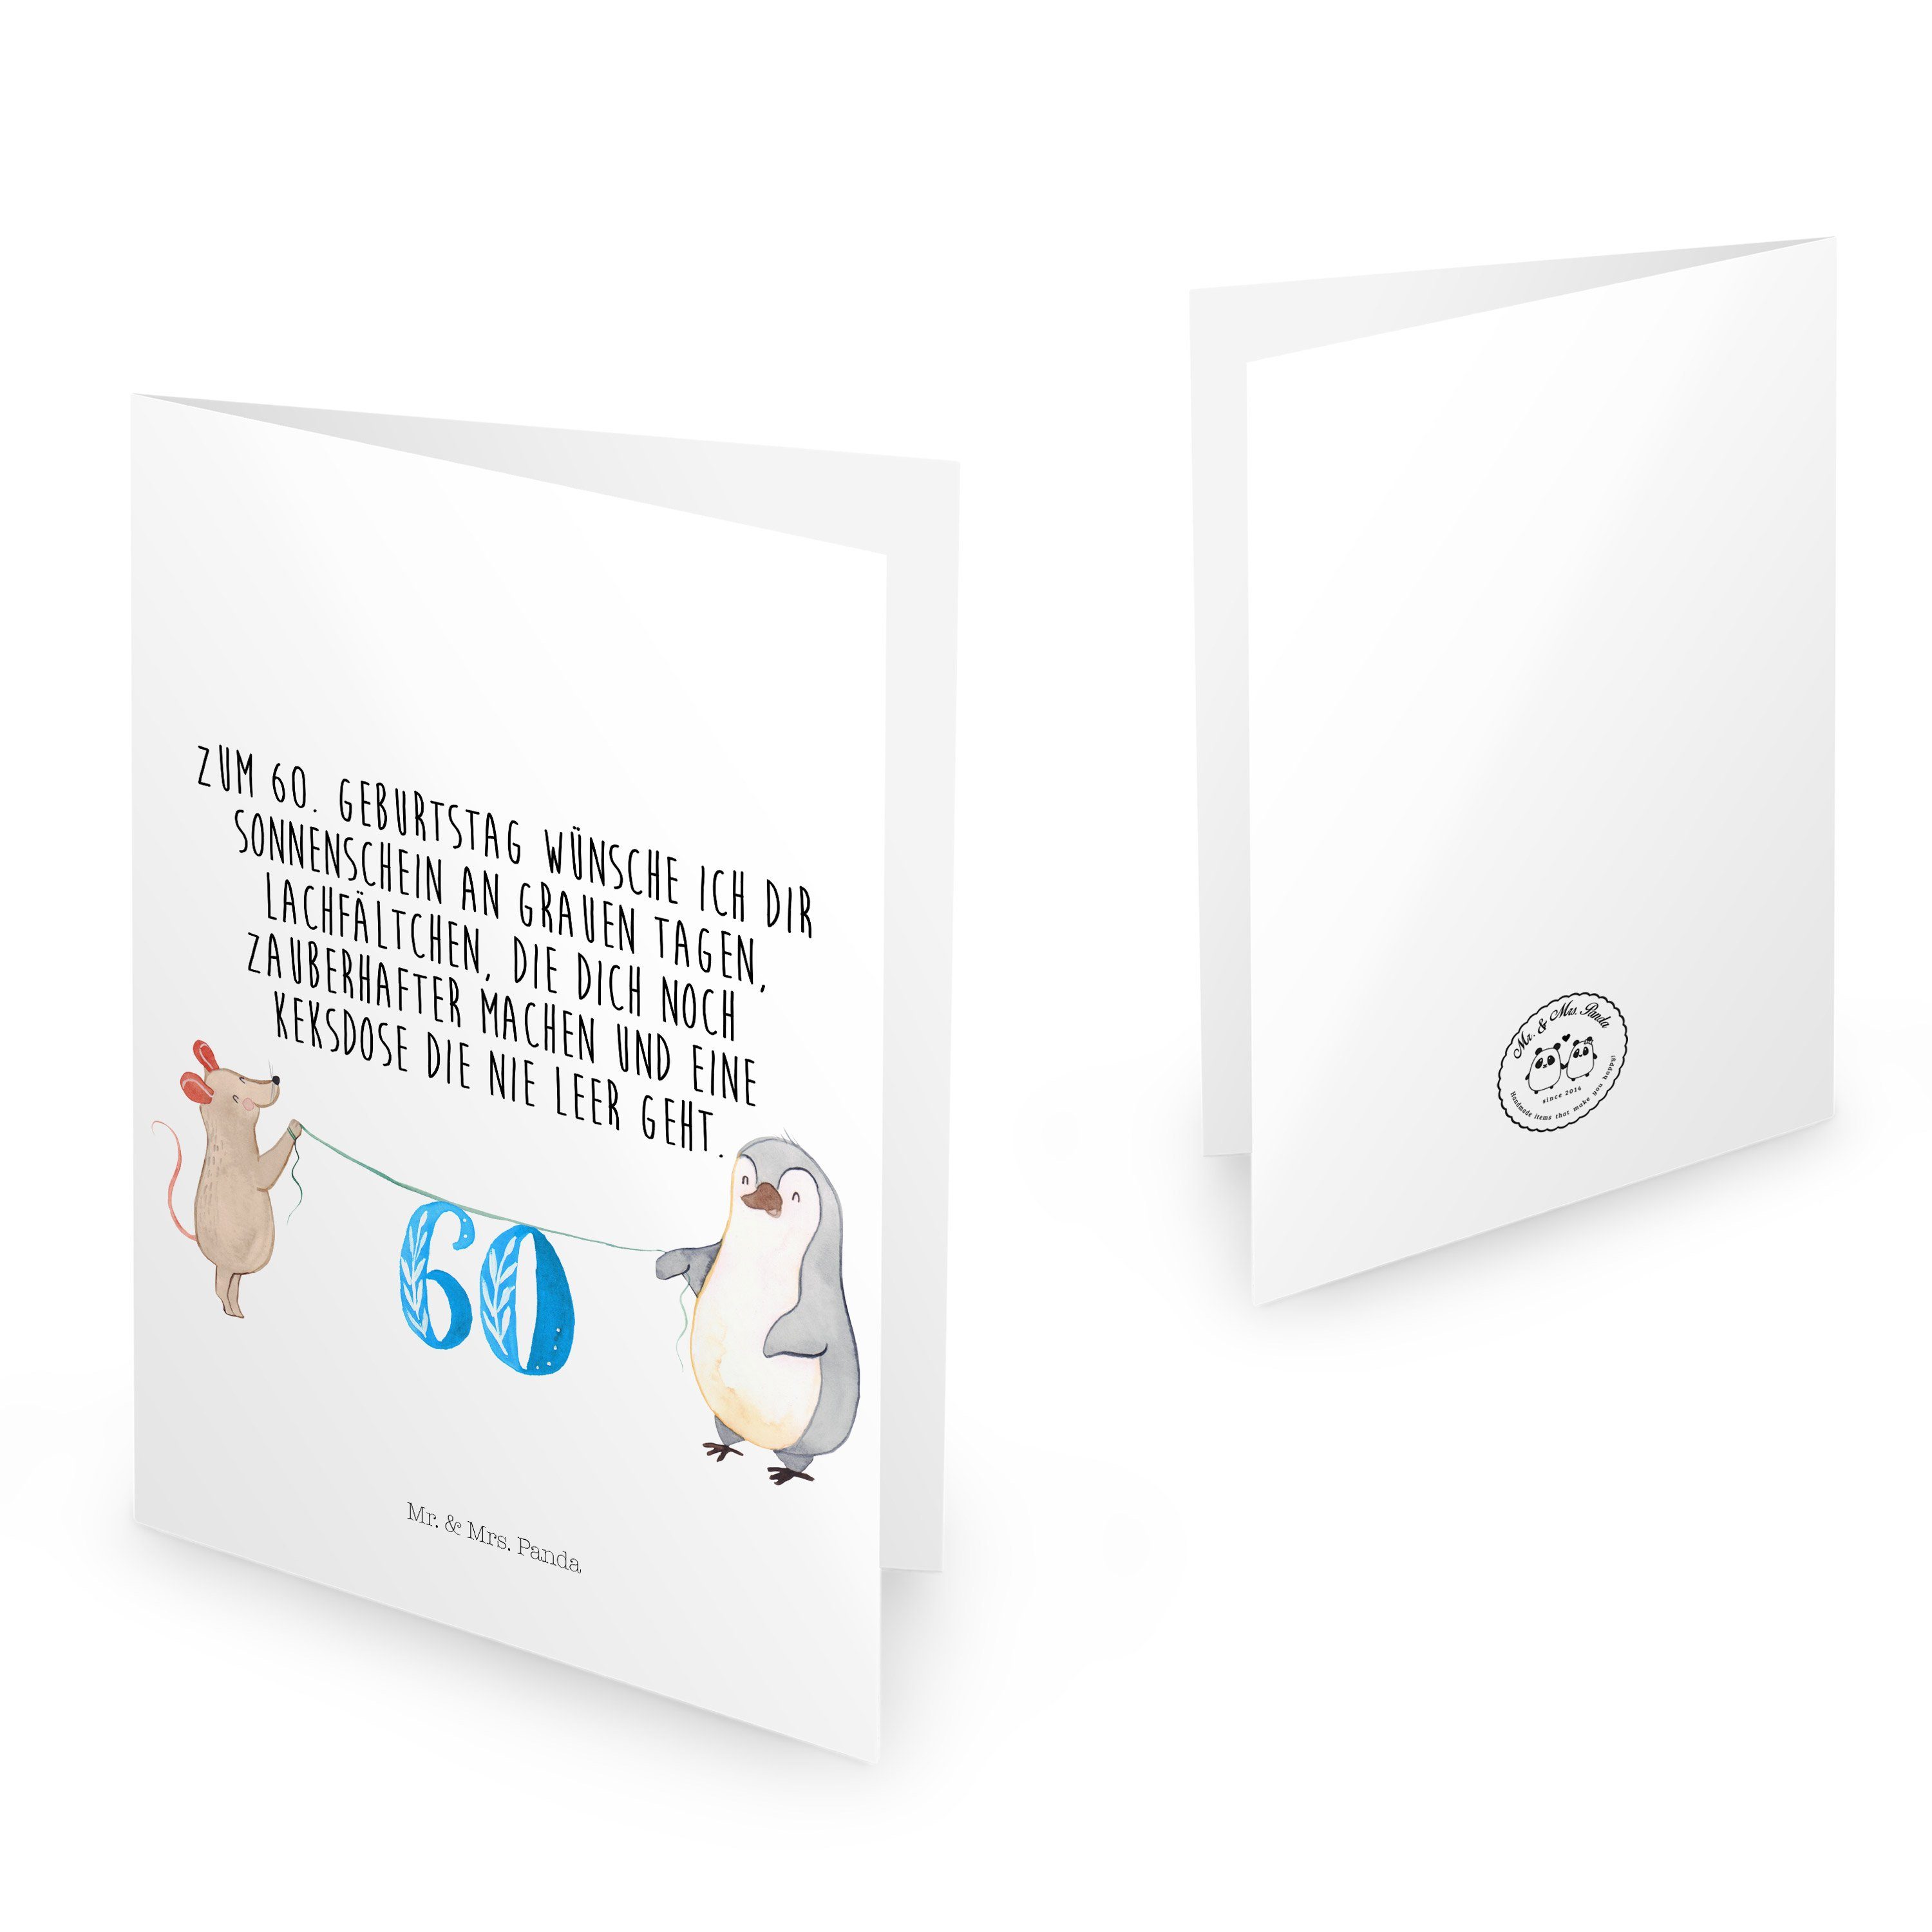 Mr. & Mrs. Panda Maus Geburtstag Pinguin - Weiß 60. - Geburtstag Klappkarte, Geschenk, Geburtstagskarten